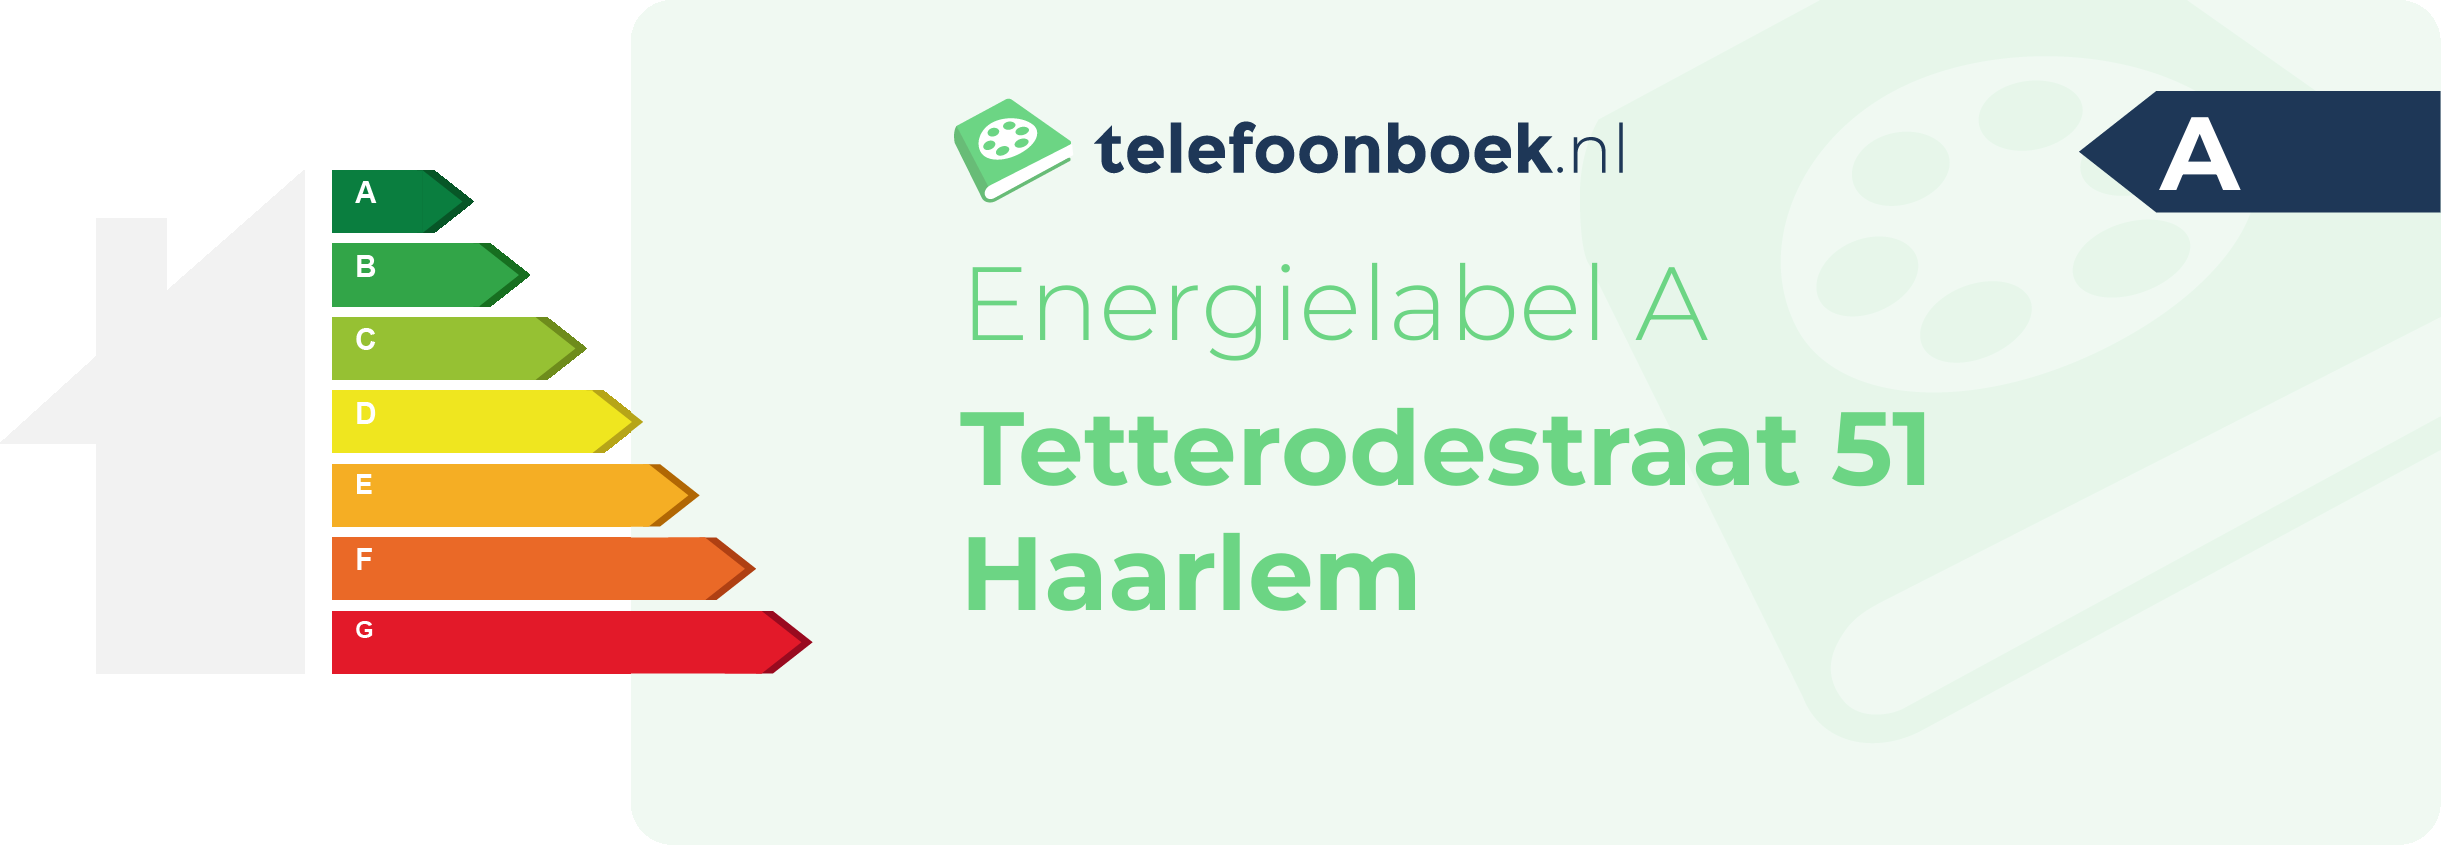 Energielabel Tetterodestraat 51 Haarlem